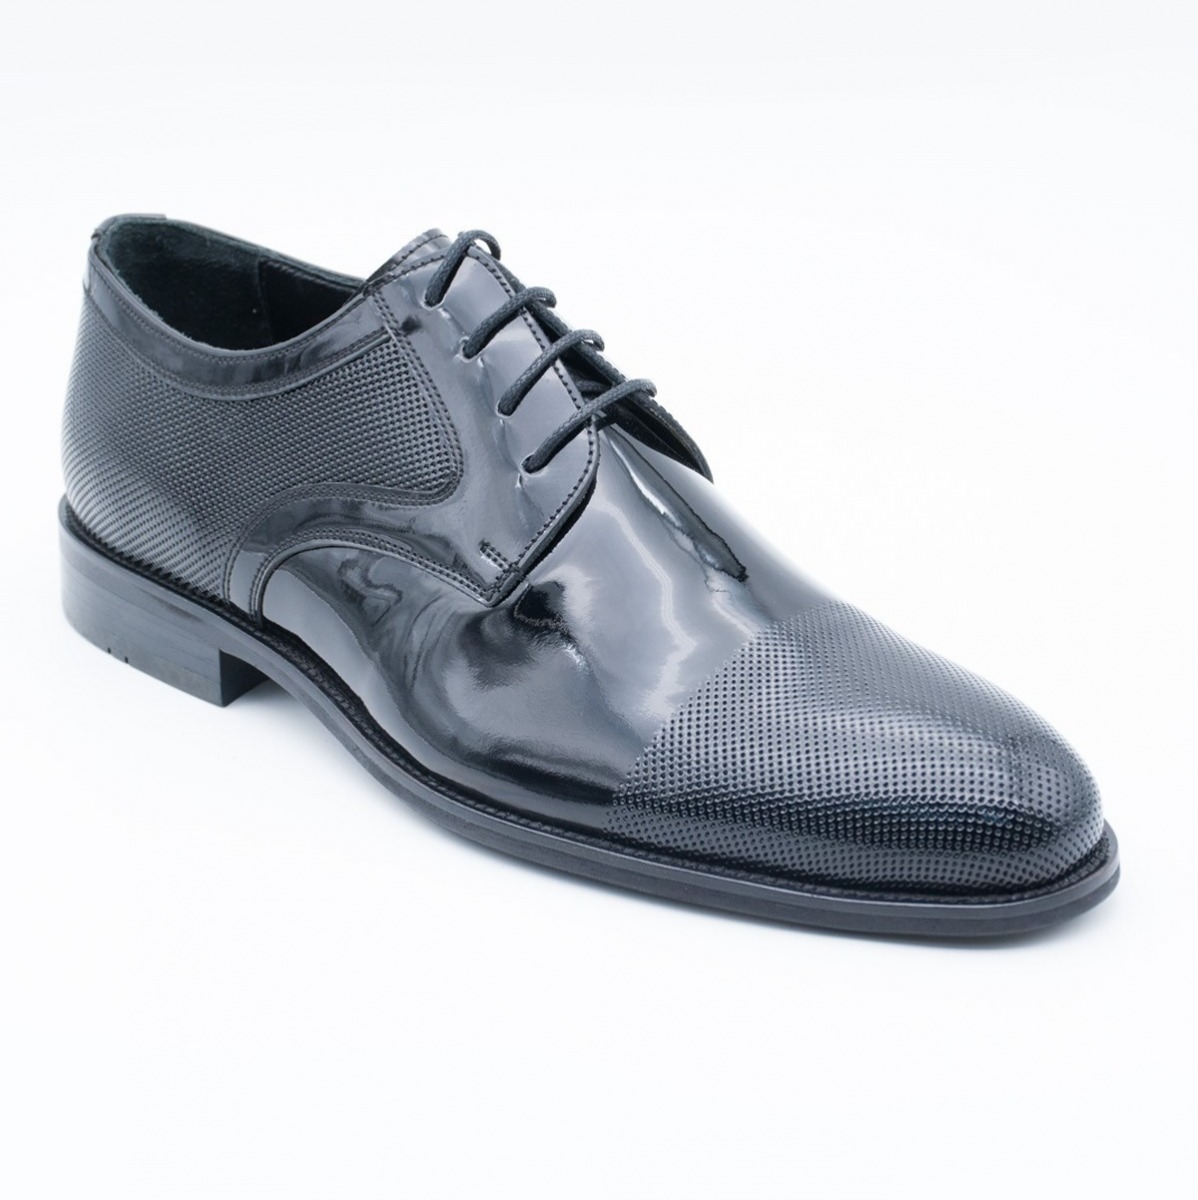 Flo Erkek Deri Klasik Ayakkabı İ19523-1 M 1000 SİYAH RUGAN. 3